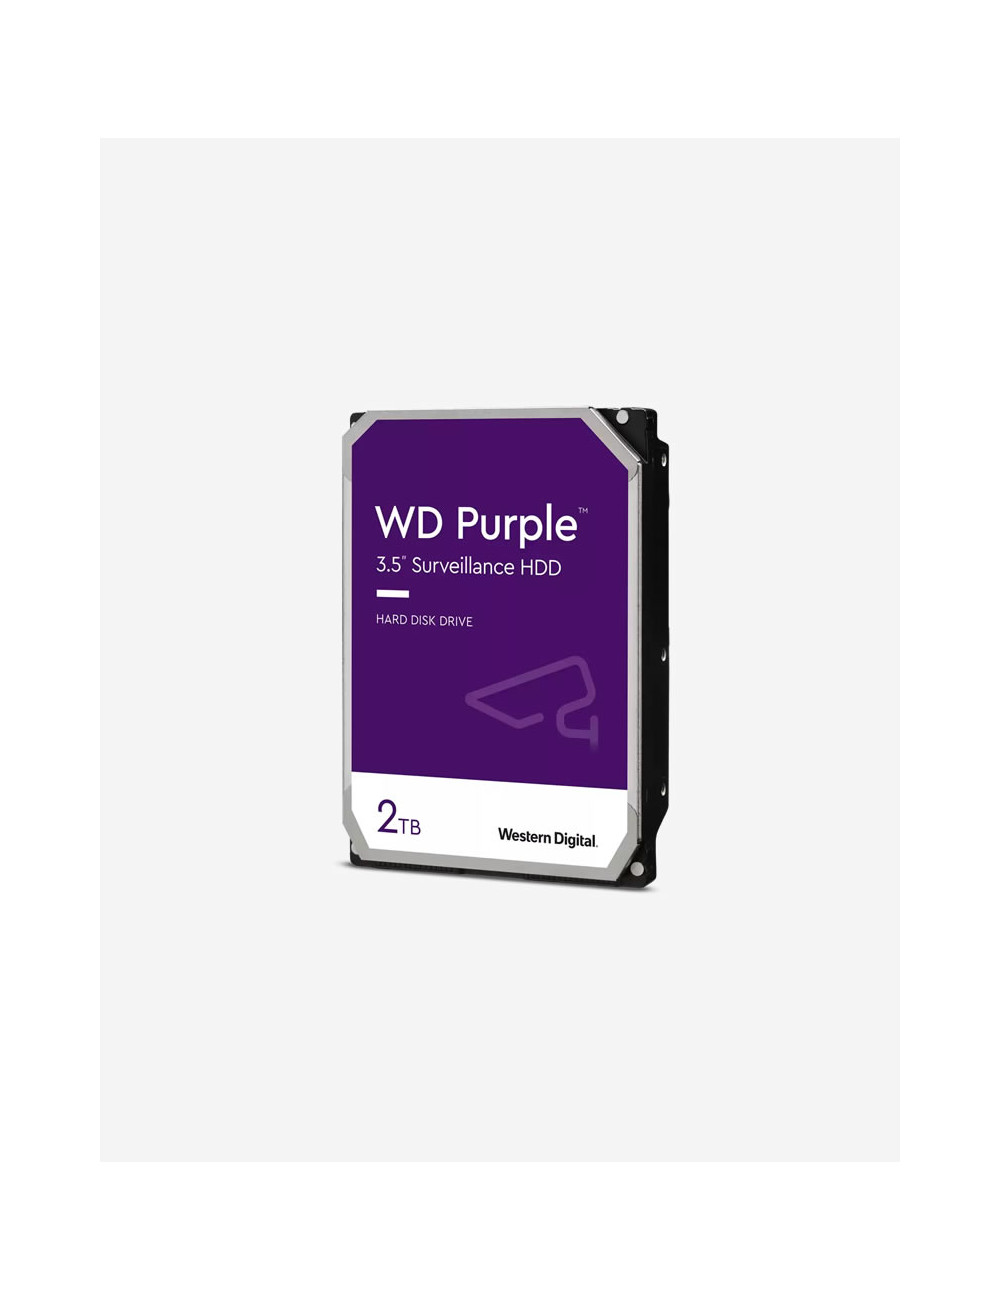 WD PURPLE 2TB 3.5" HDD Drive